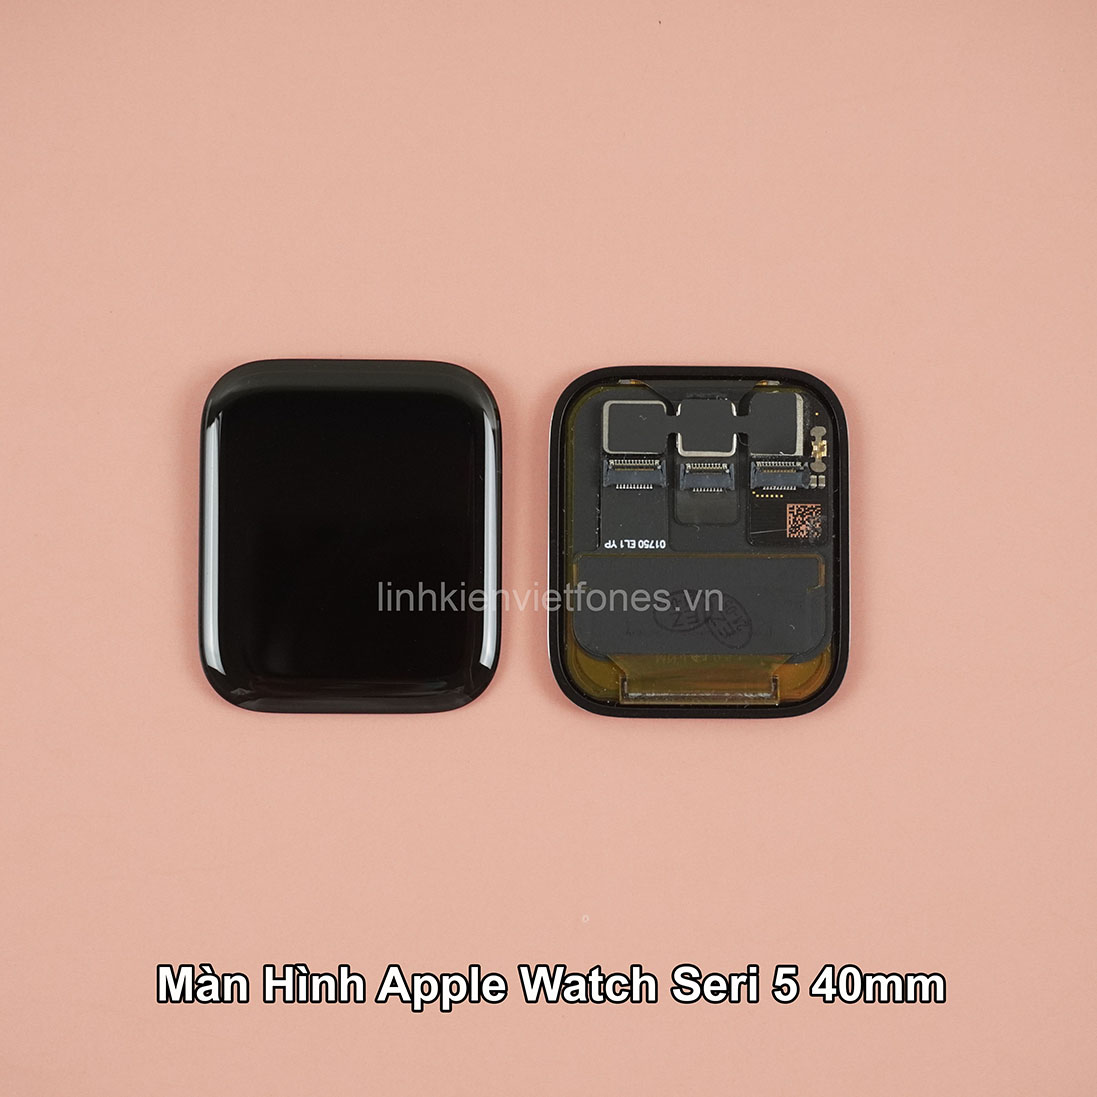 Màn hình Apple watch series 5 / SE - 40mm TM - linhkienvietfones.vn